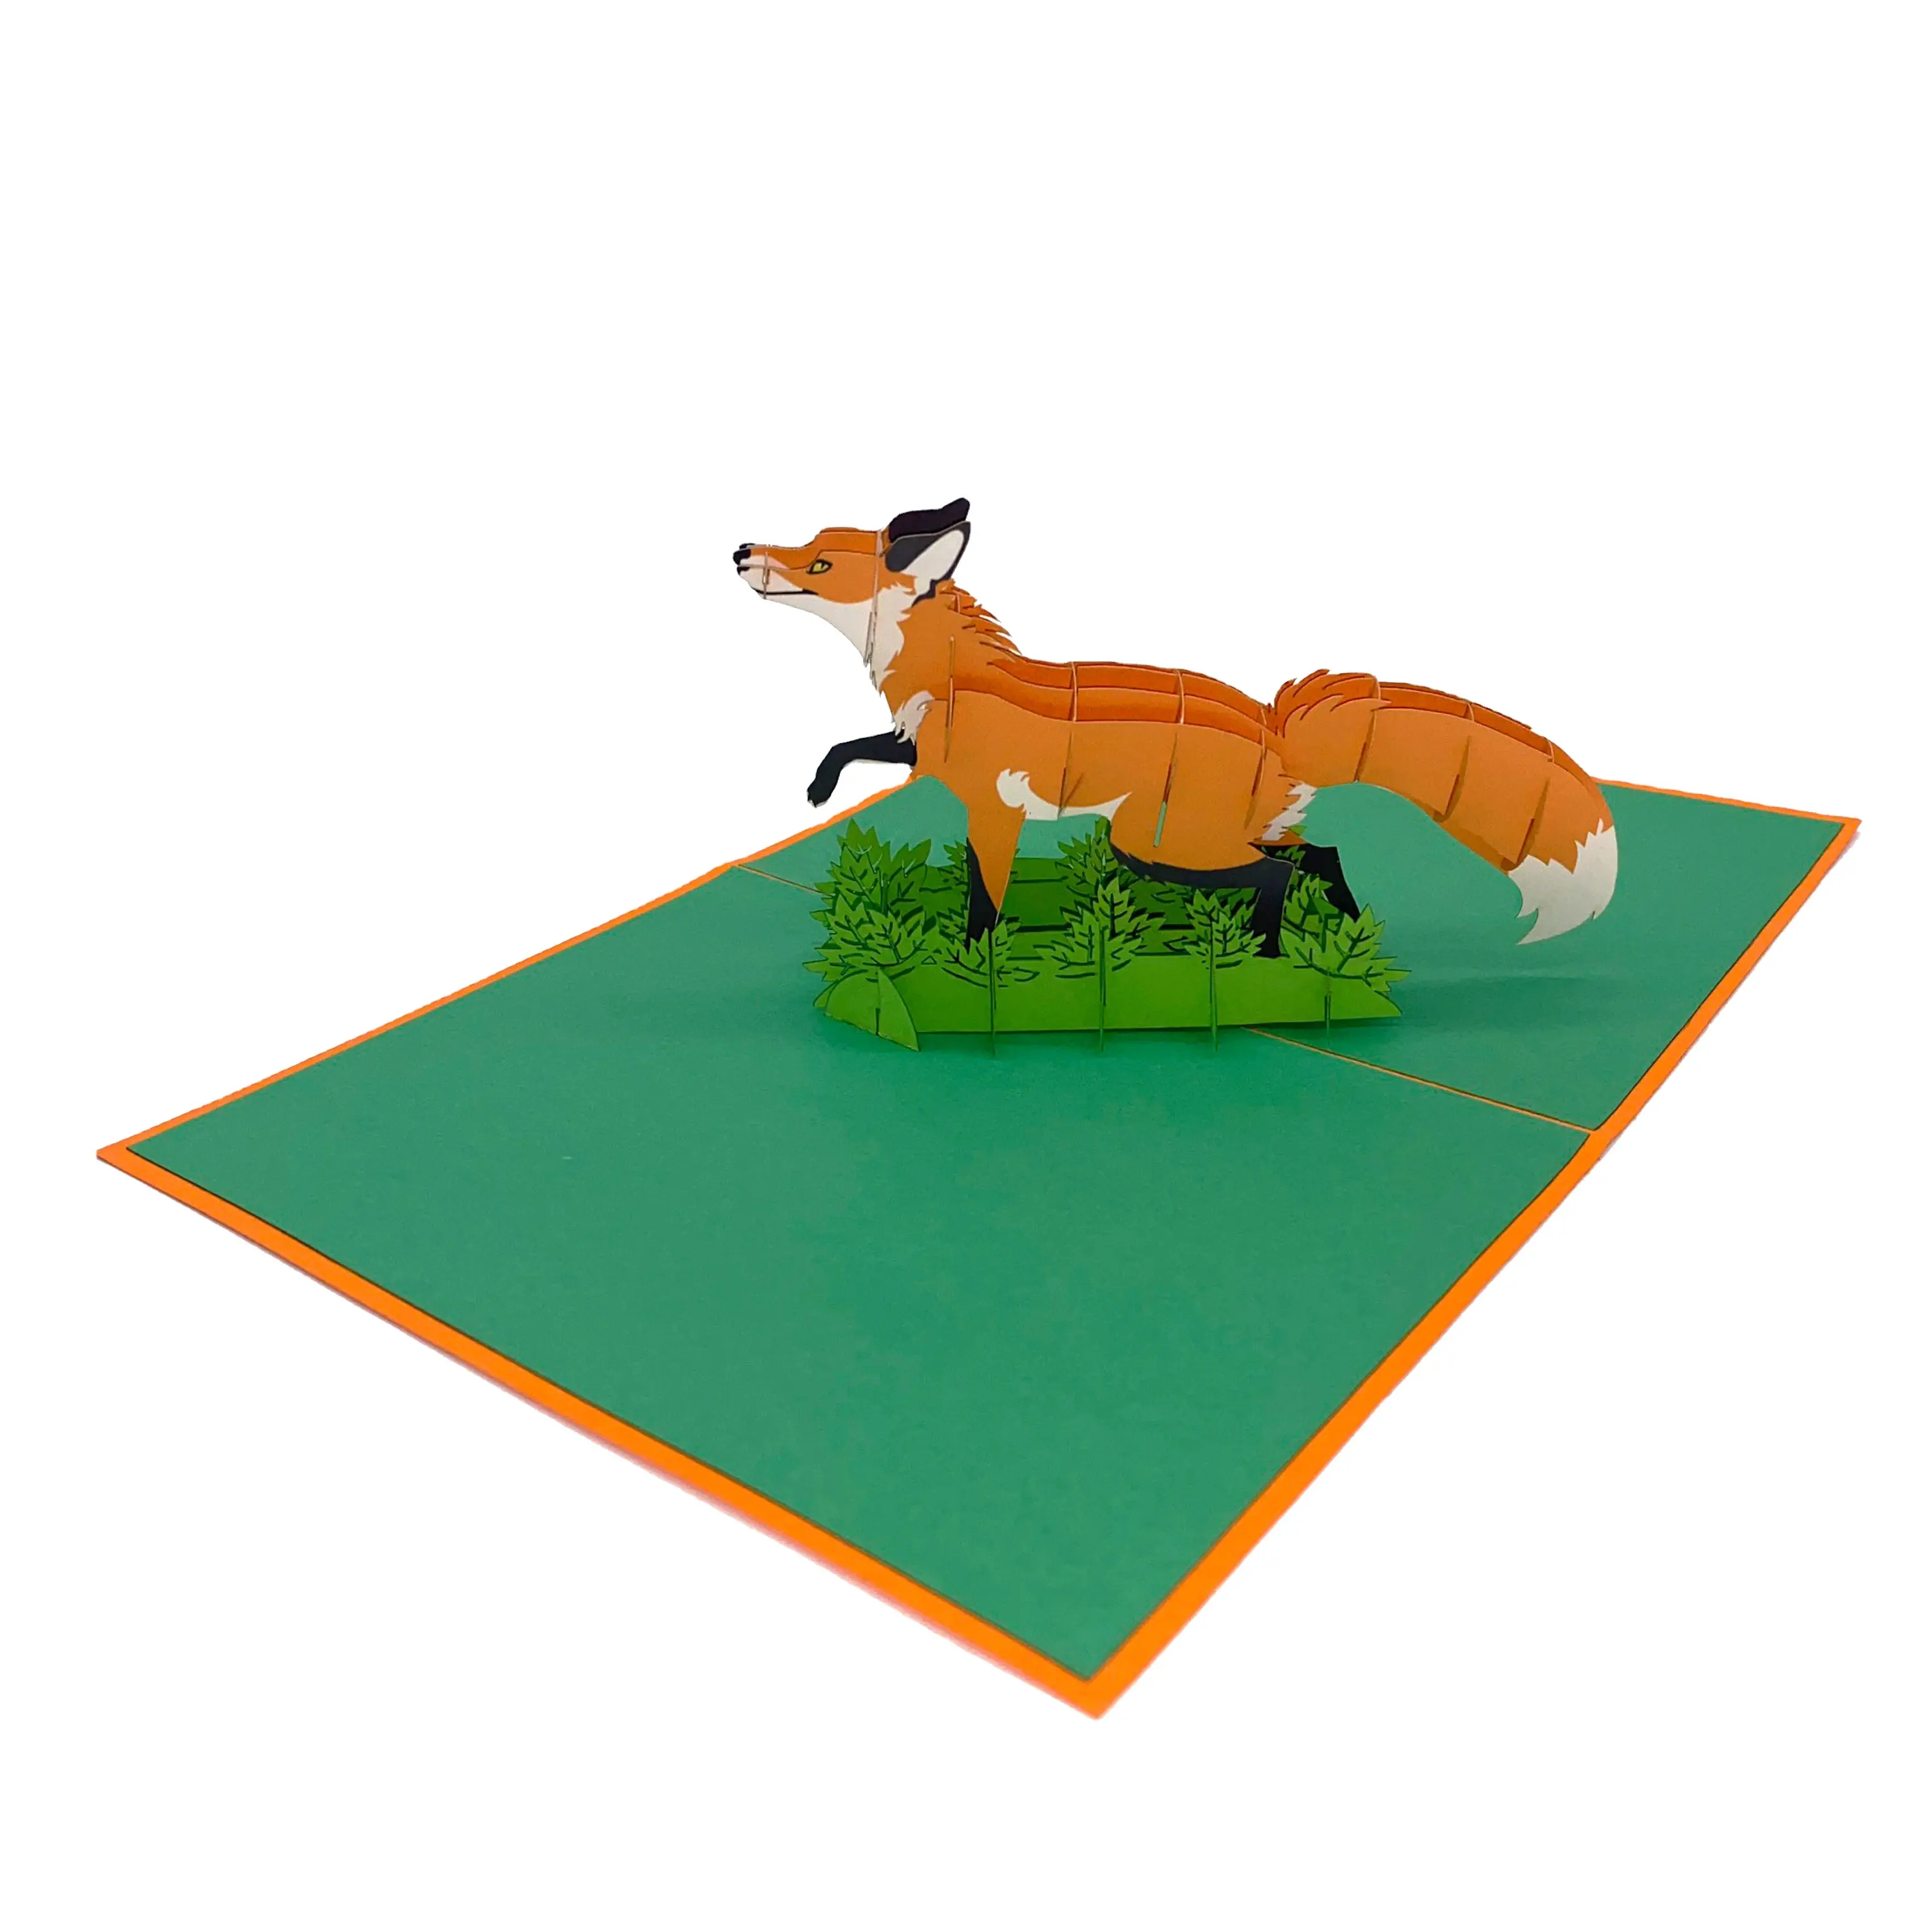 Fox 3D Pop Up Card carta taglio Laser unico regalo animale fatto a mano all'ingrosso Kirigami Best Seller 3D biglietto di auguri